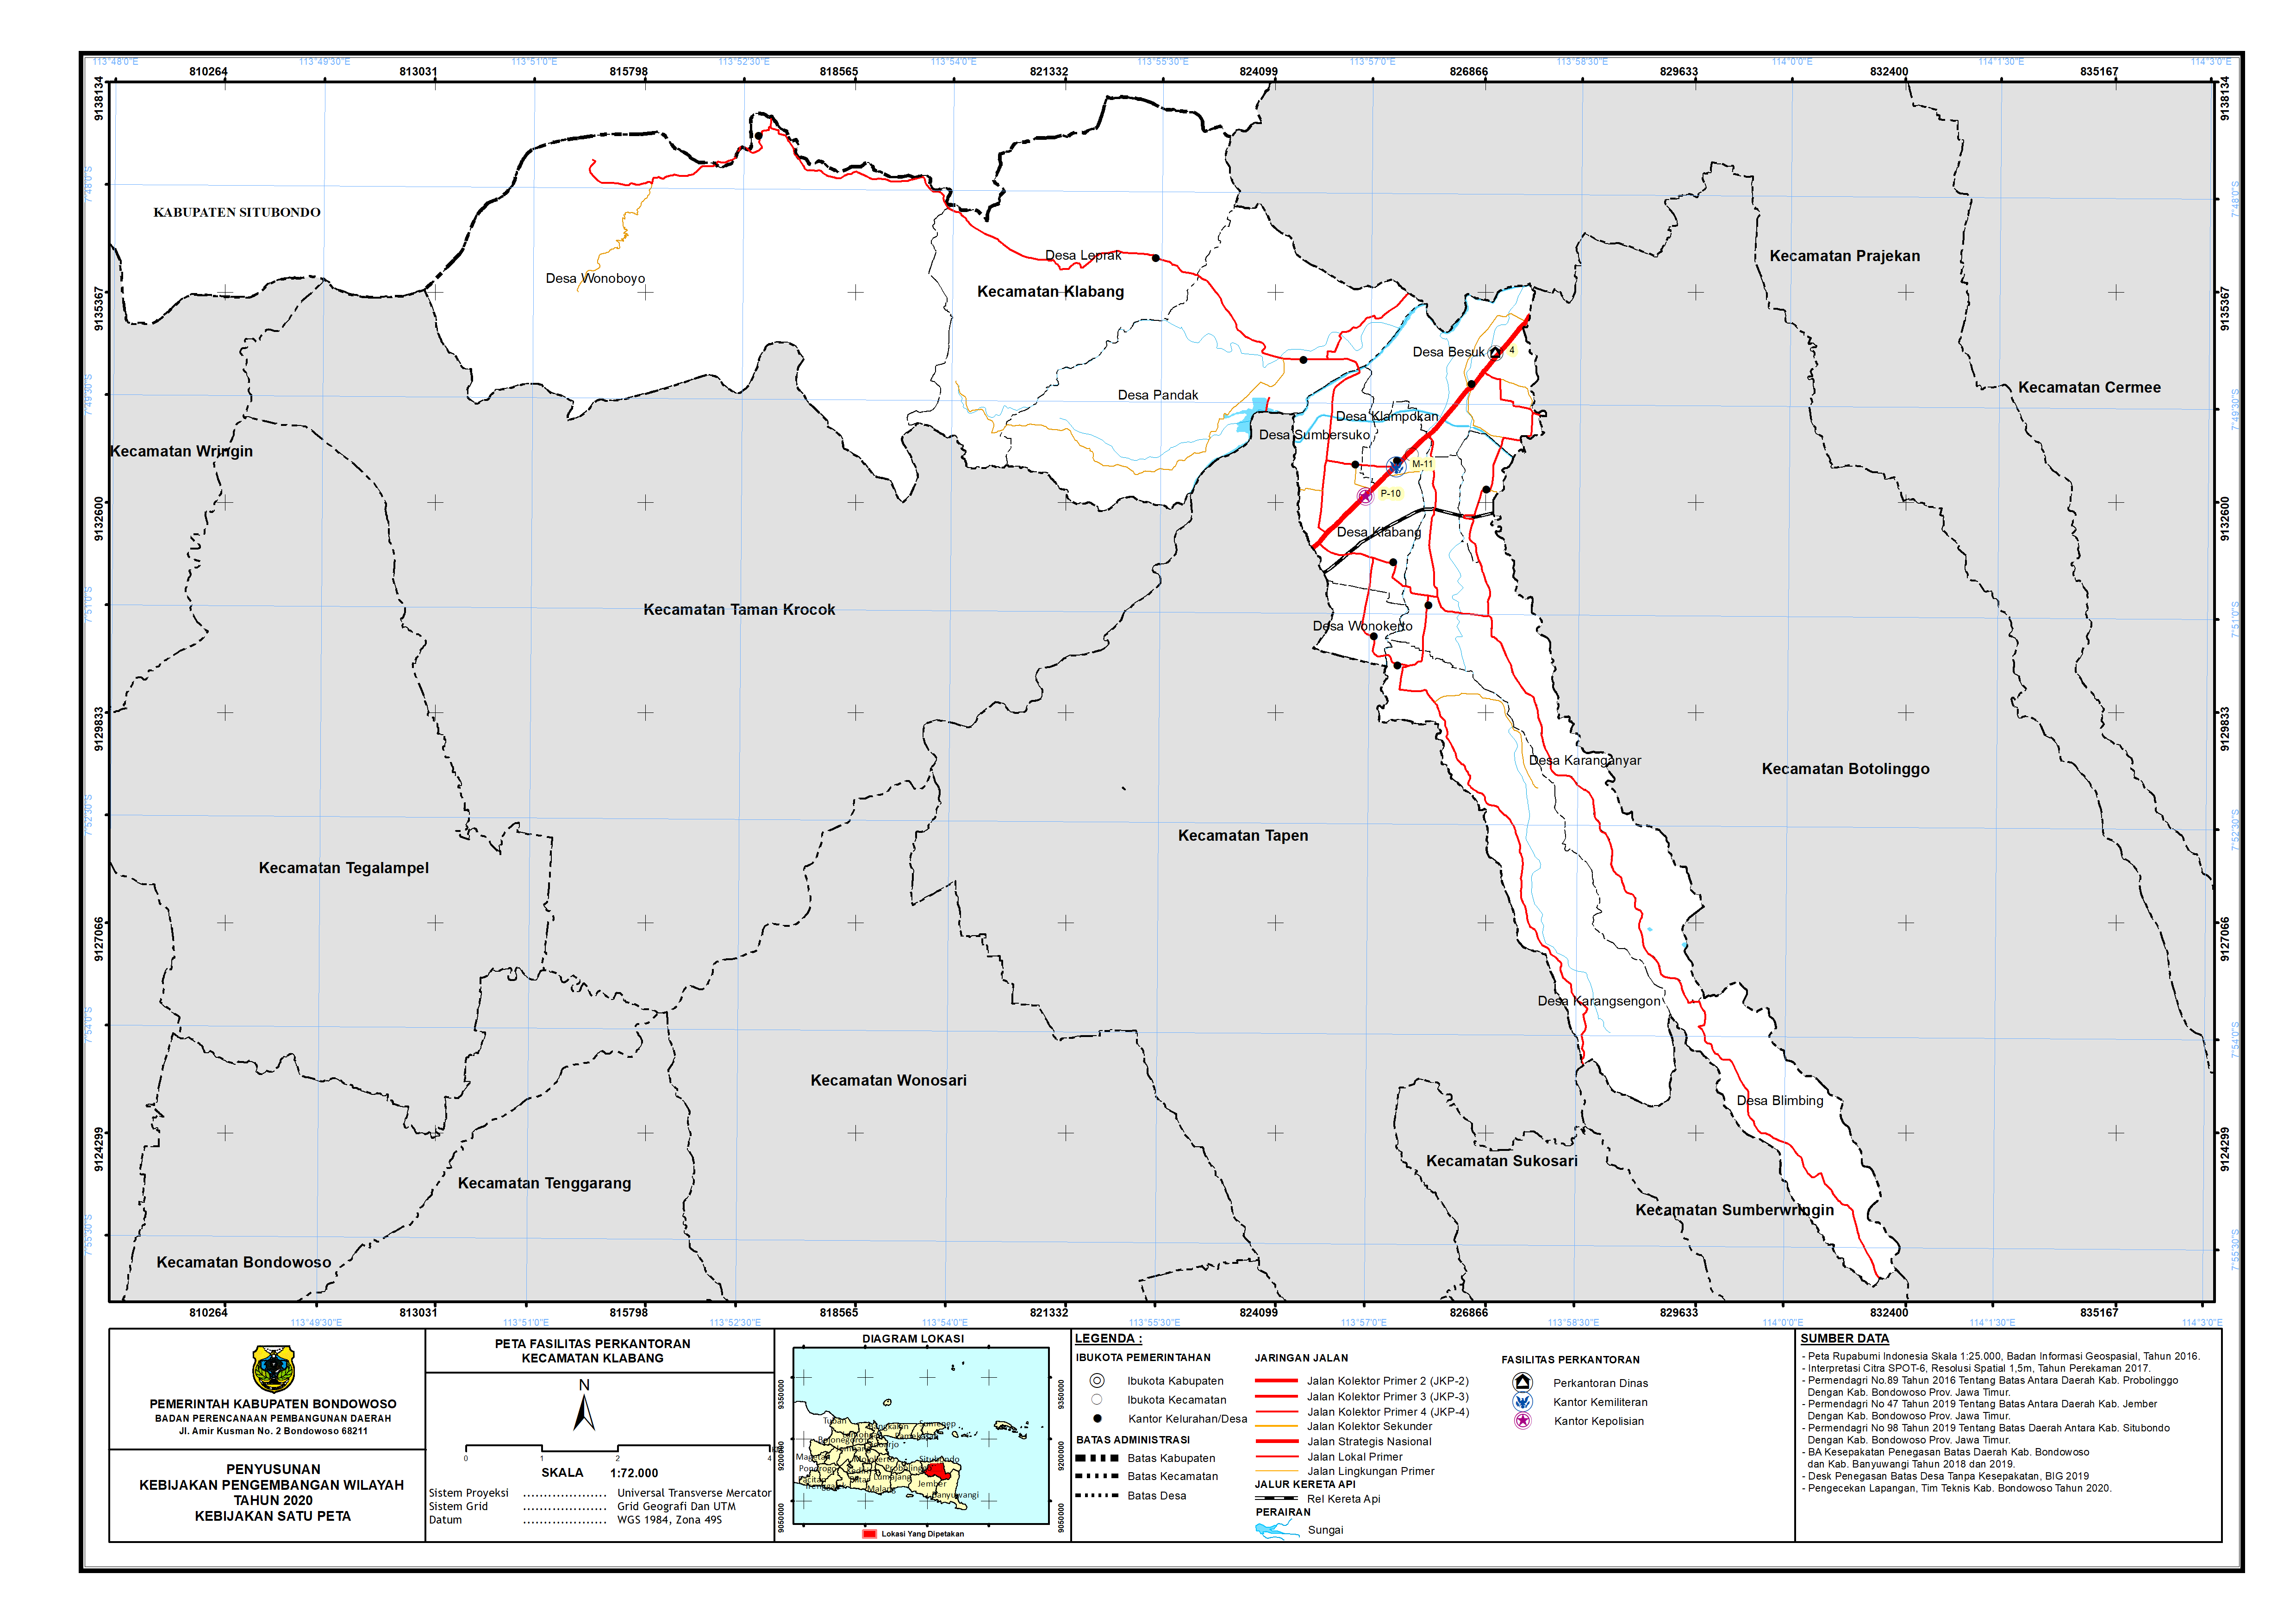 Peta Persebaran Perkantoran Kecamatan Klabang.png